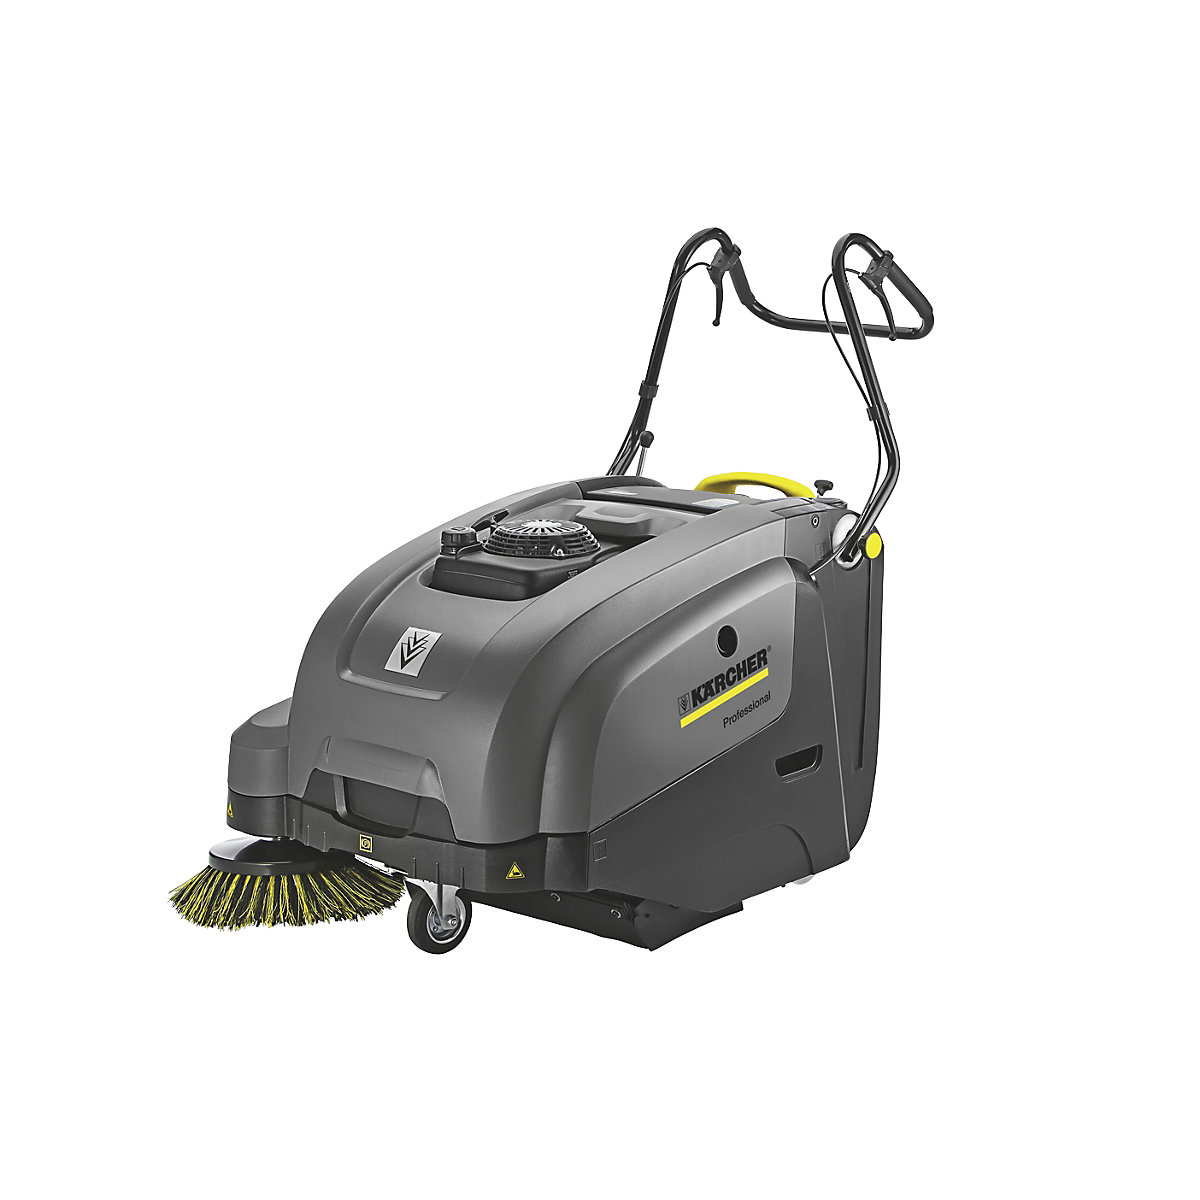 Walk-behind vacuum sweeper - Kärcher